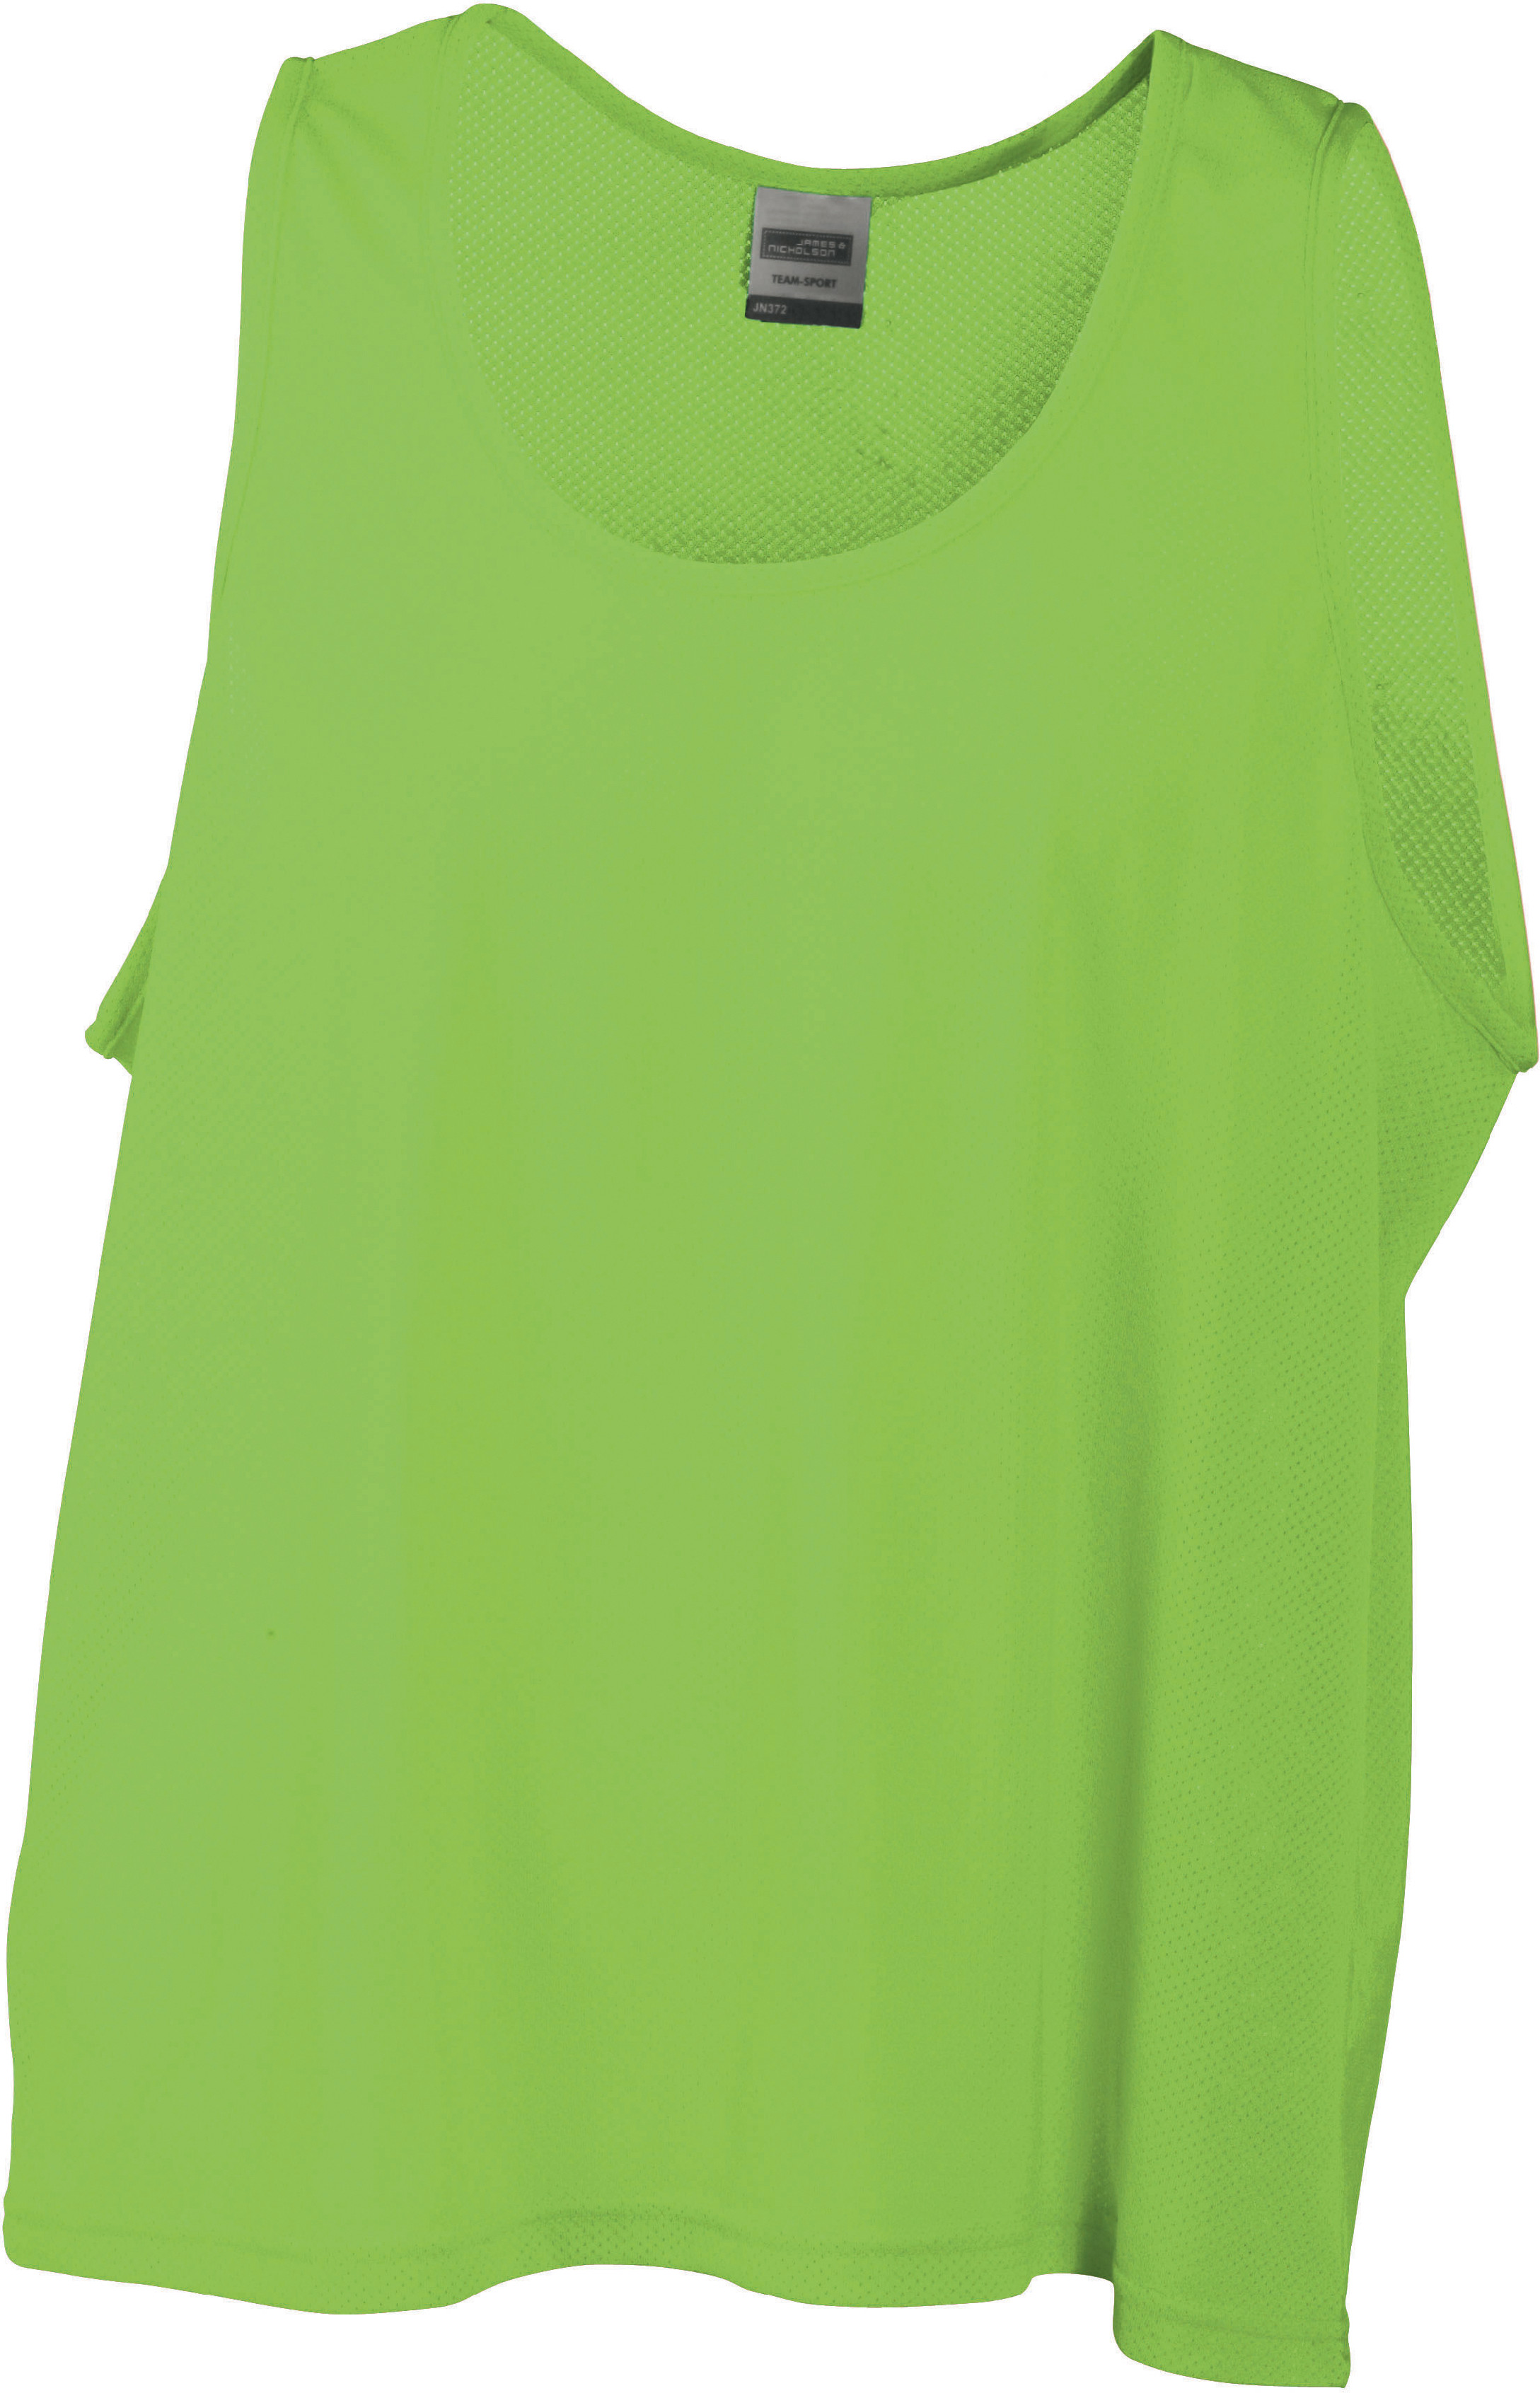 Týmový rozlišovací dres JN 372 Barva: středně zelená, Velikost: L